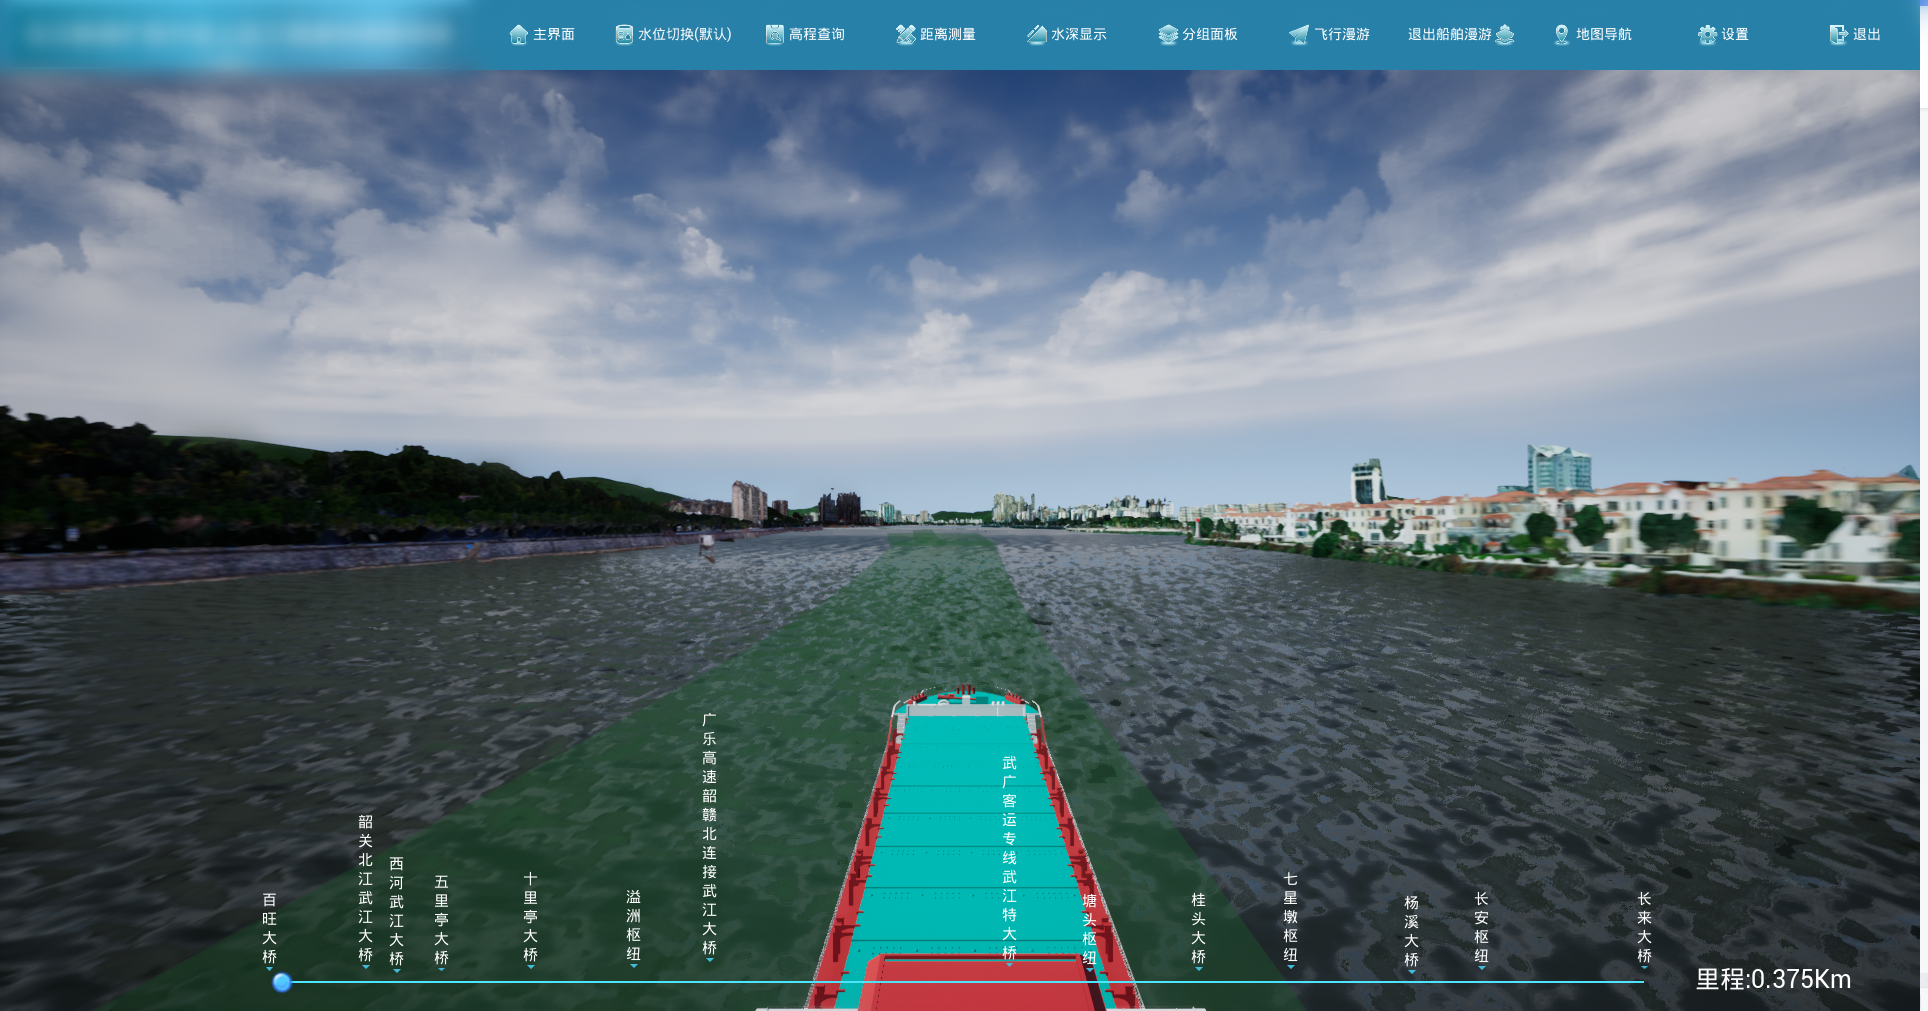 北疆航道-航道工程虚拟踏勘系统-船舶漫游